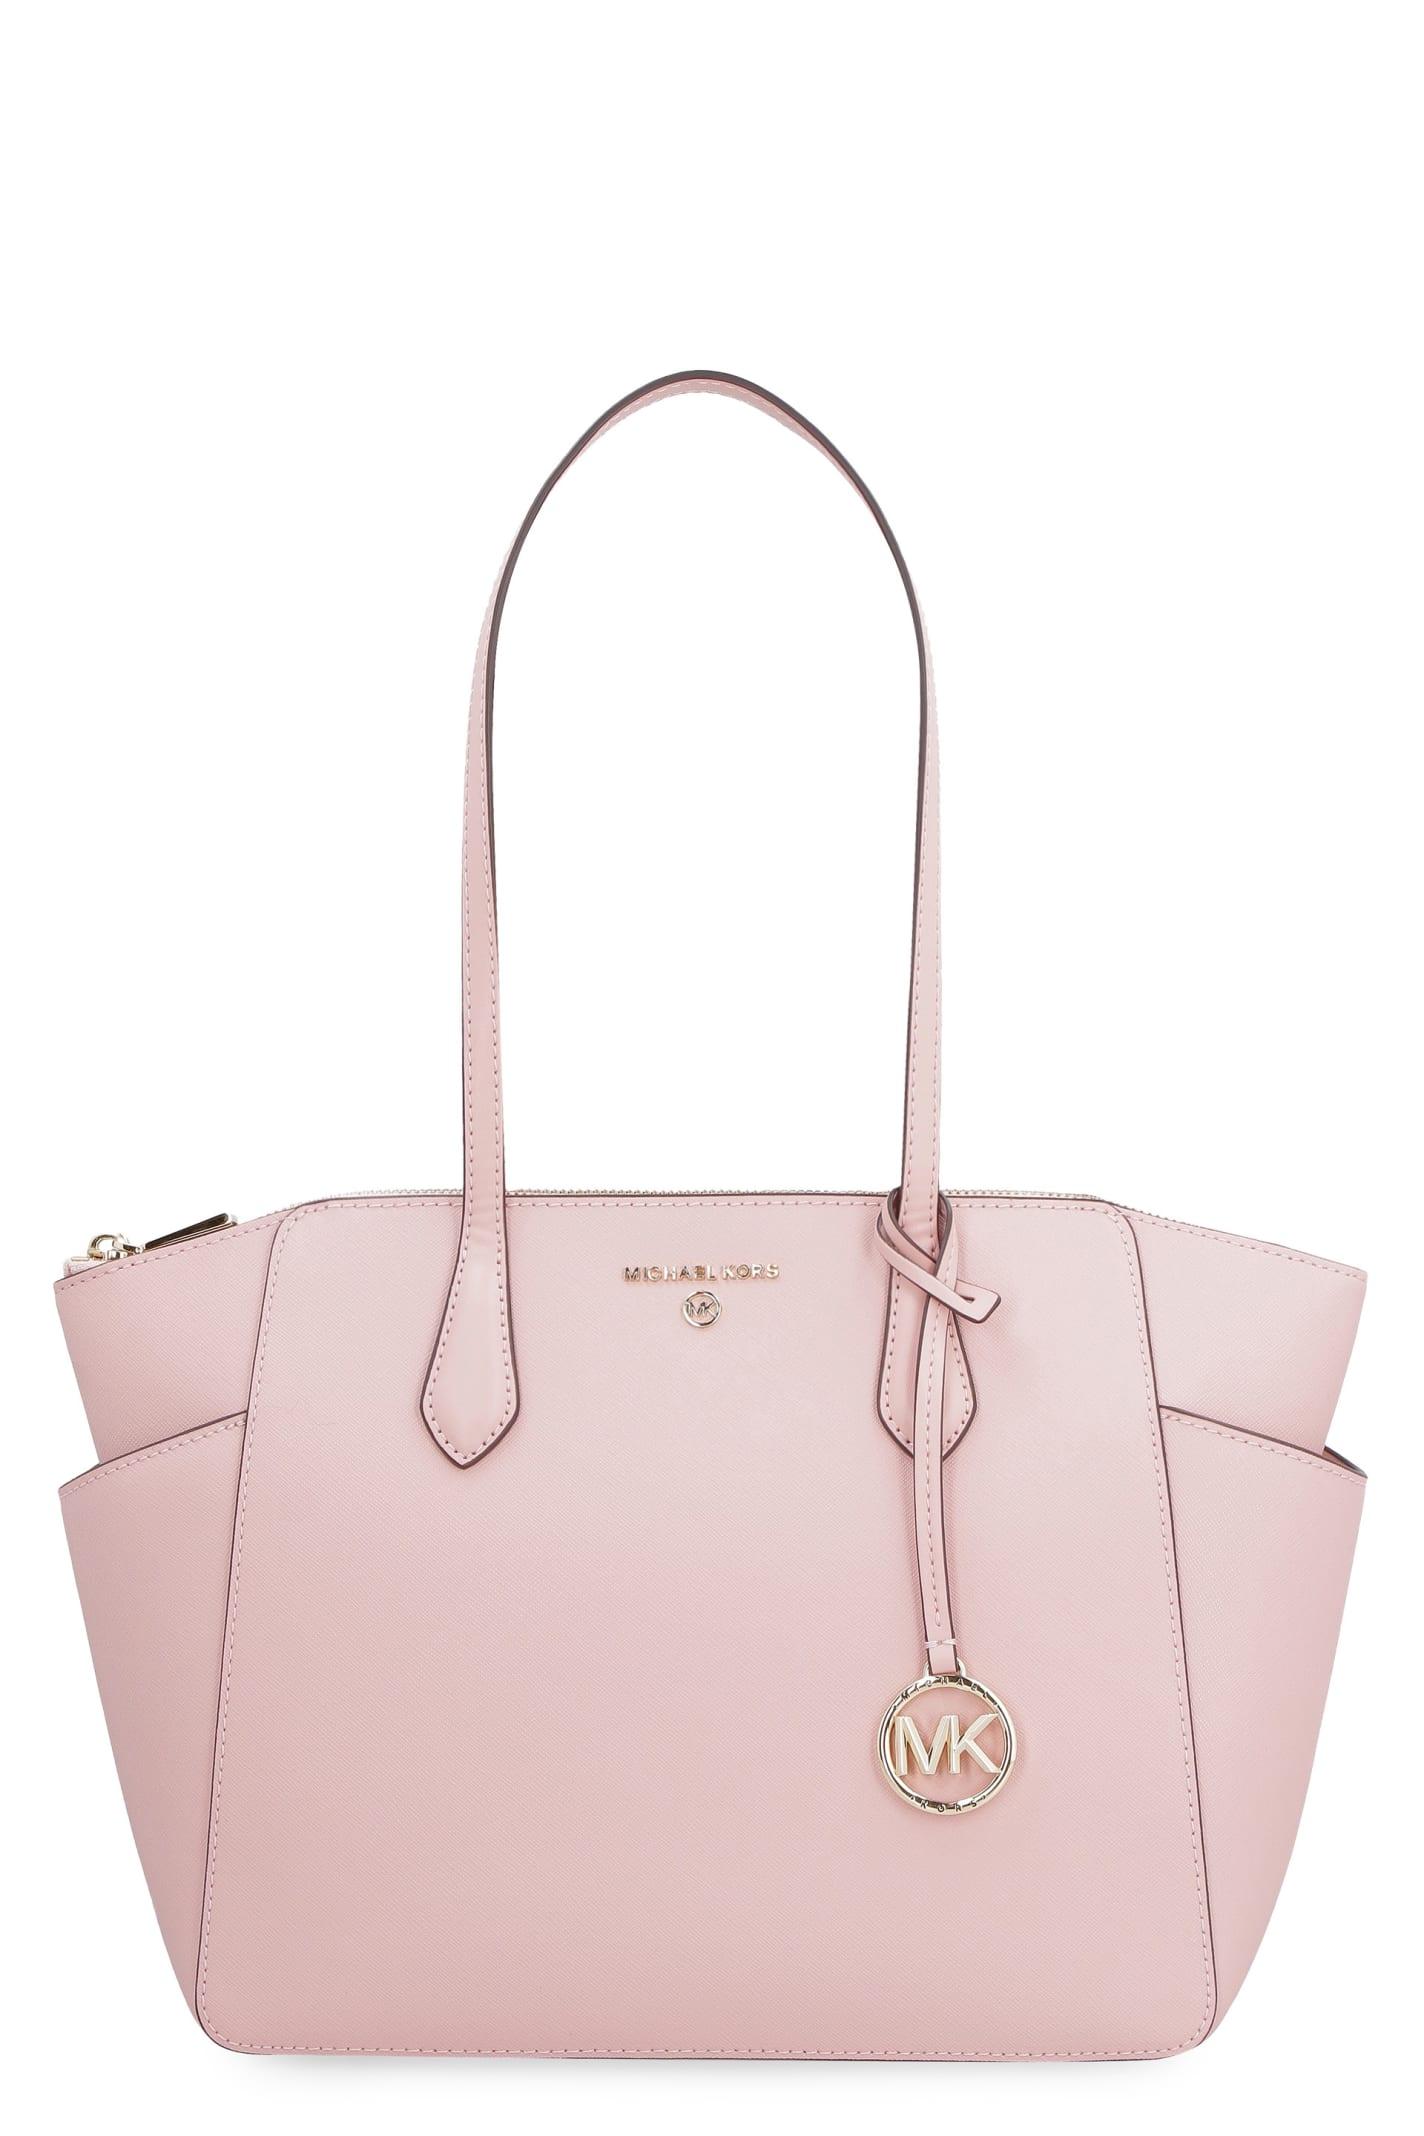 MICHAEL KORS Handbag Marilyn Medium - Light Pink…